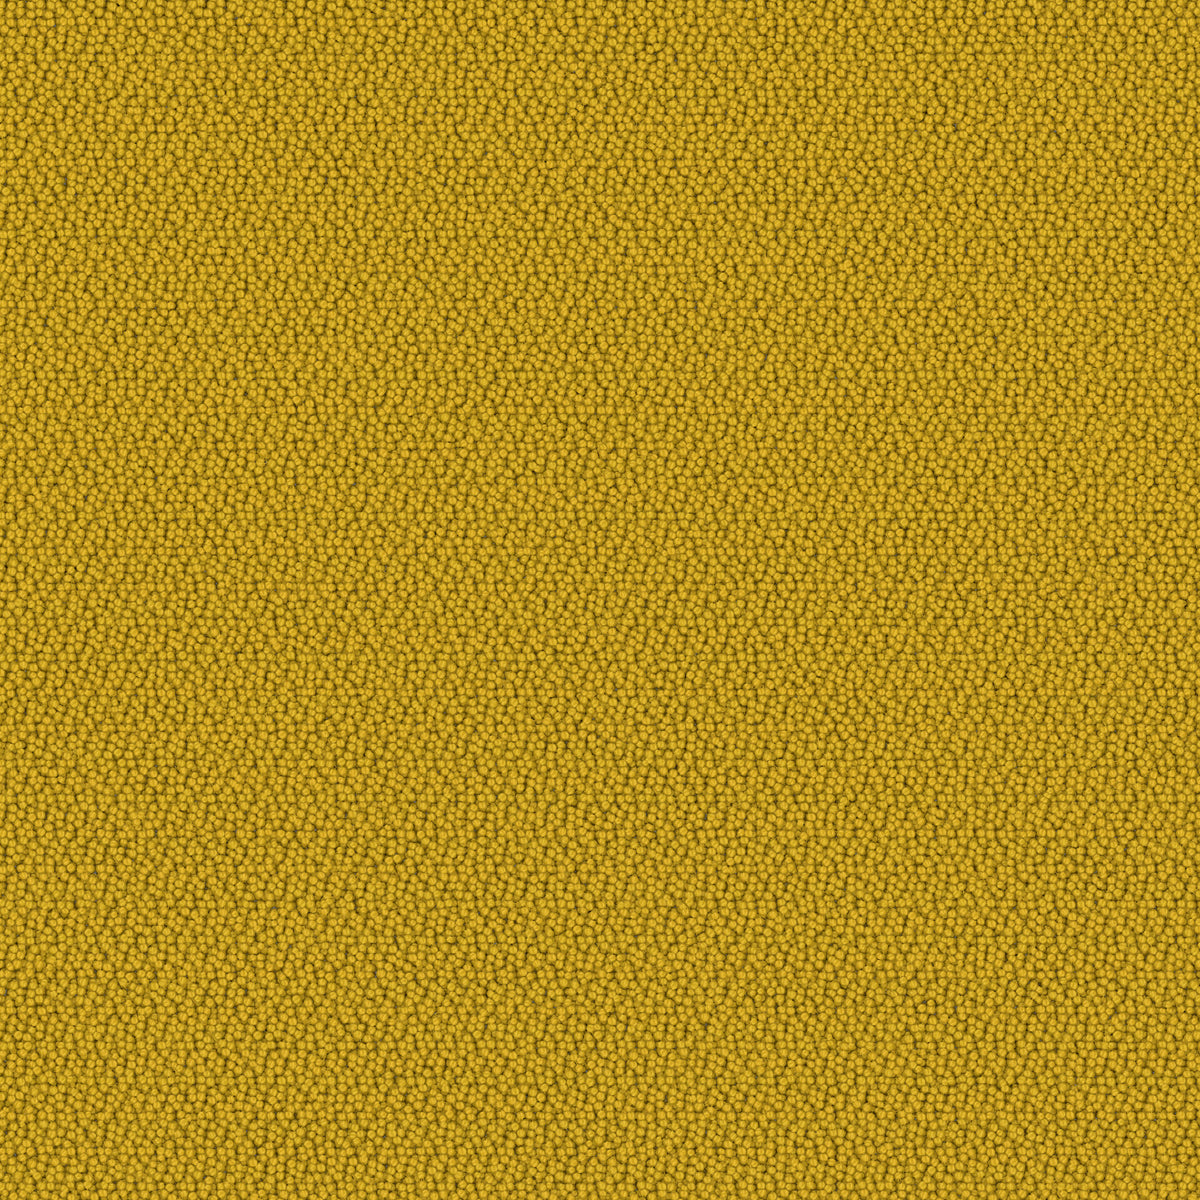 Mohawk Group - Colorbeat - Carpet Tile - Lemon Zest